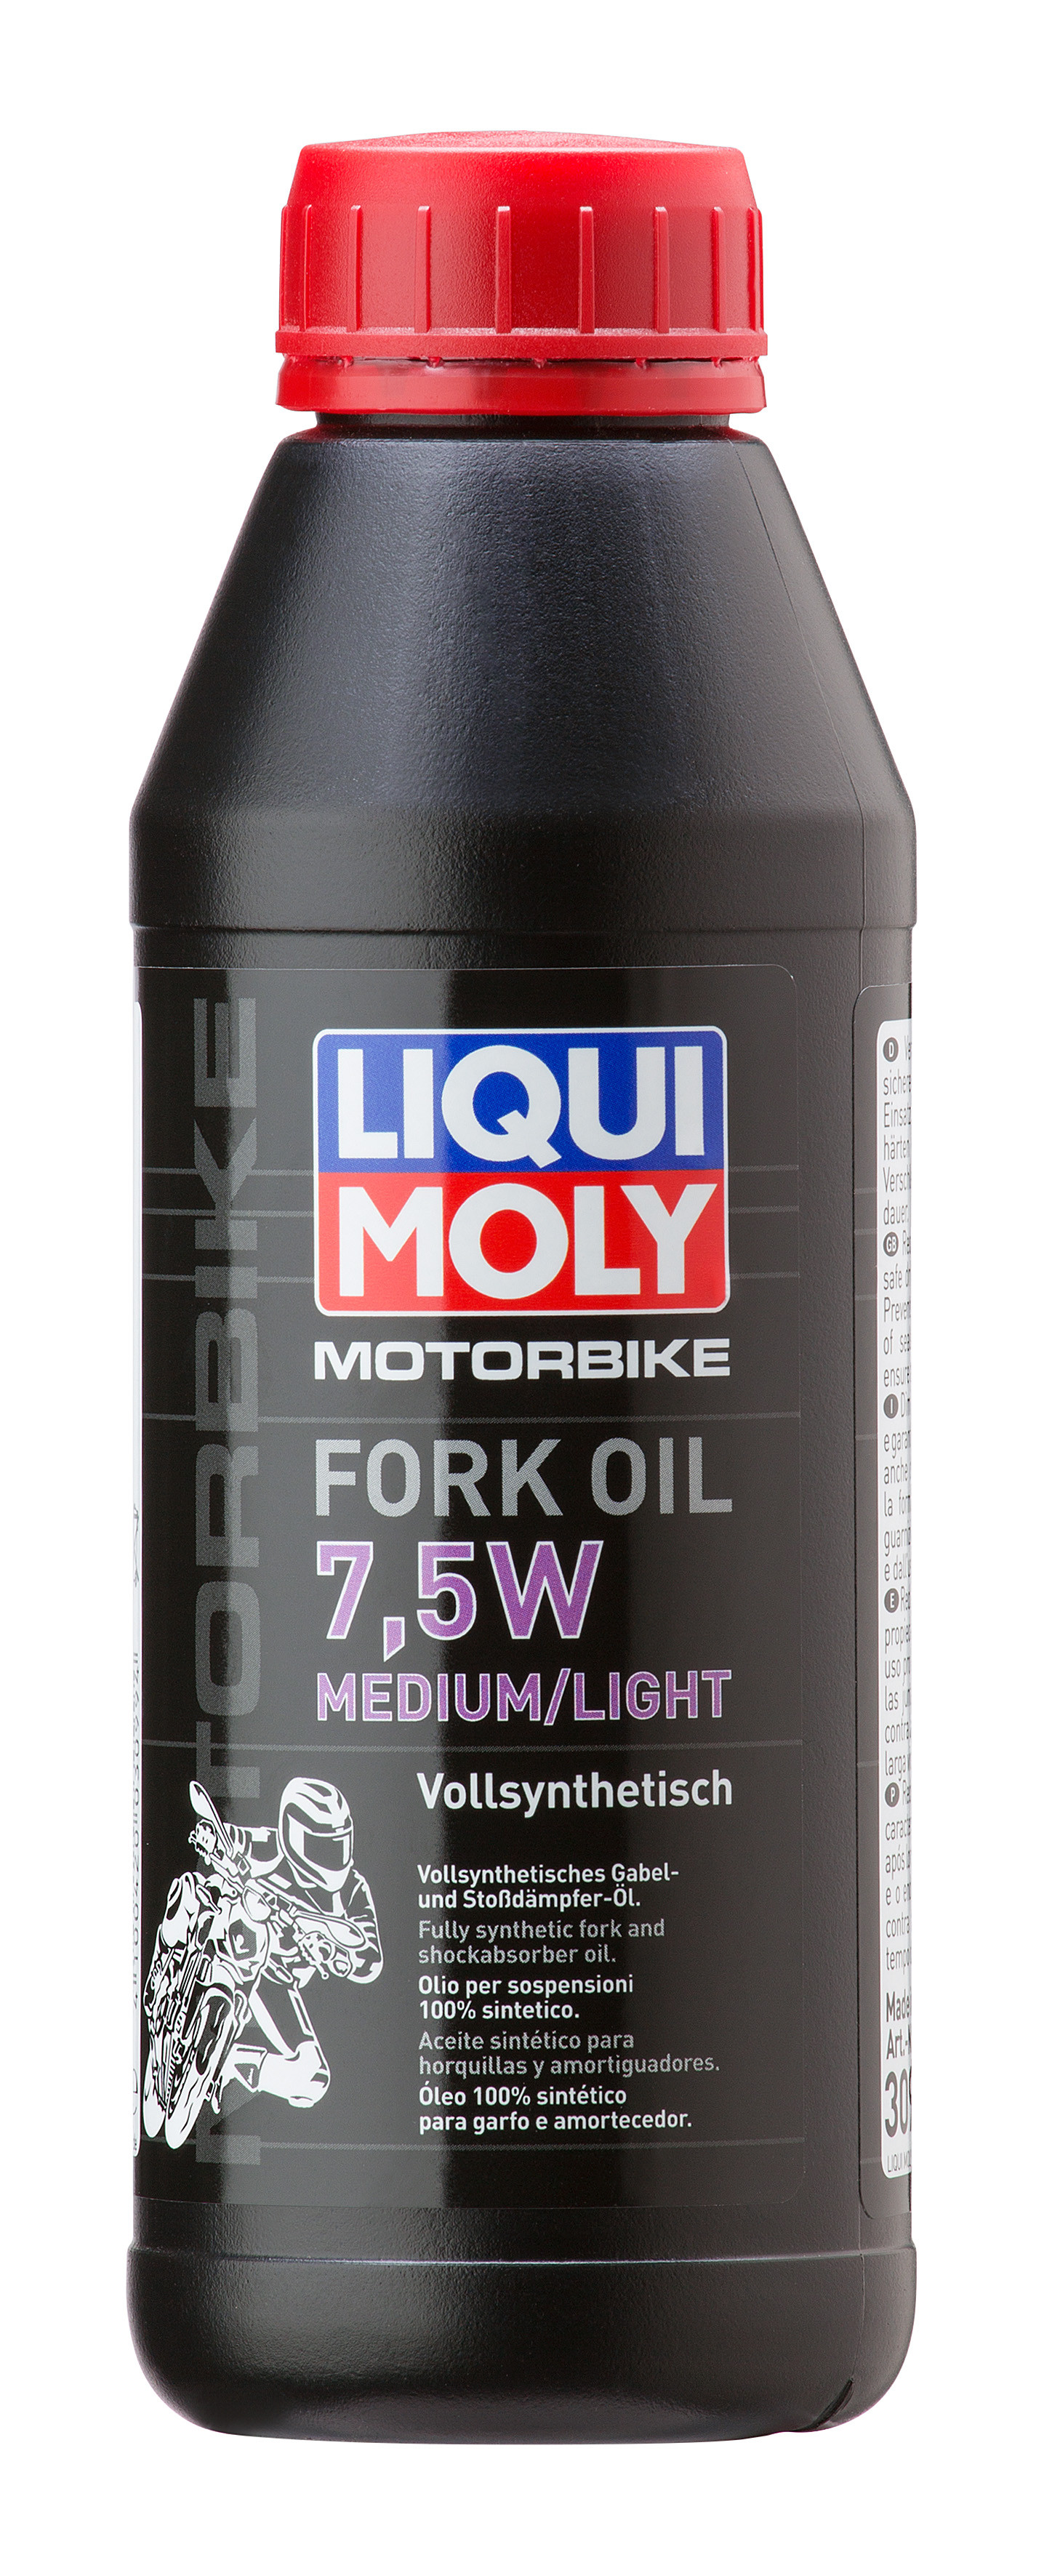  Moly 3099 Motorbike Fork Oil 7,5W medium/light Motorrad Gabelöl .